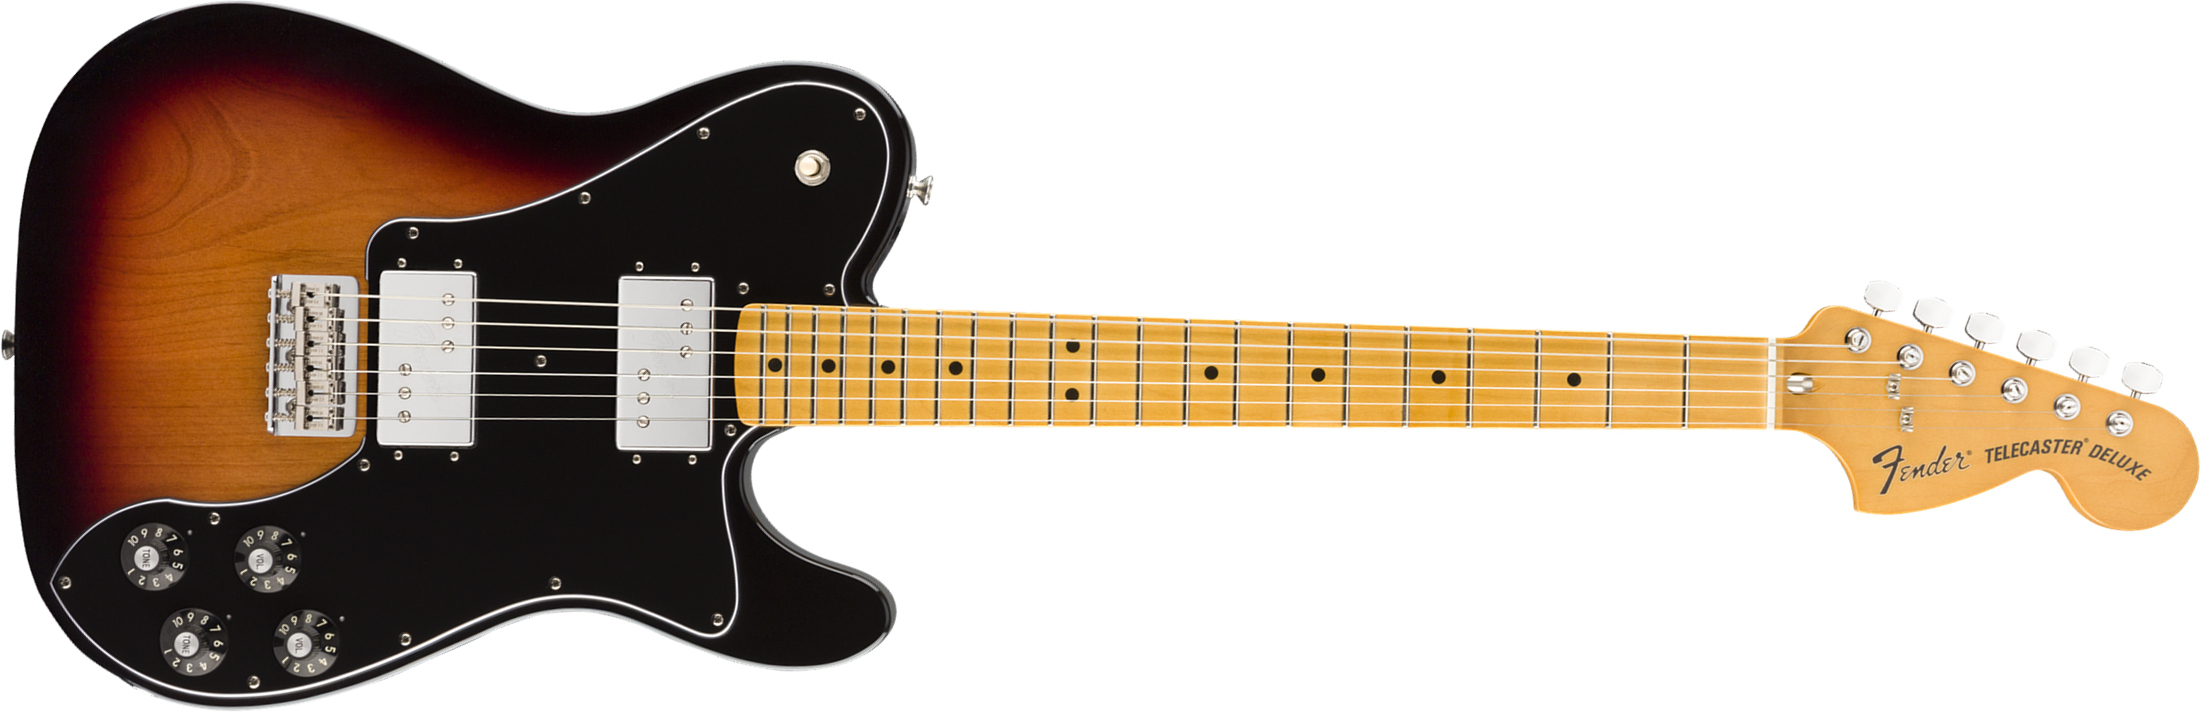 Fender Tele 70s Deluxe Vintera Vintage Mex Mn - 3-color Sunburst - Tel shape electric guitar - Main picture